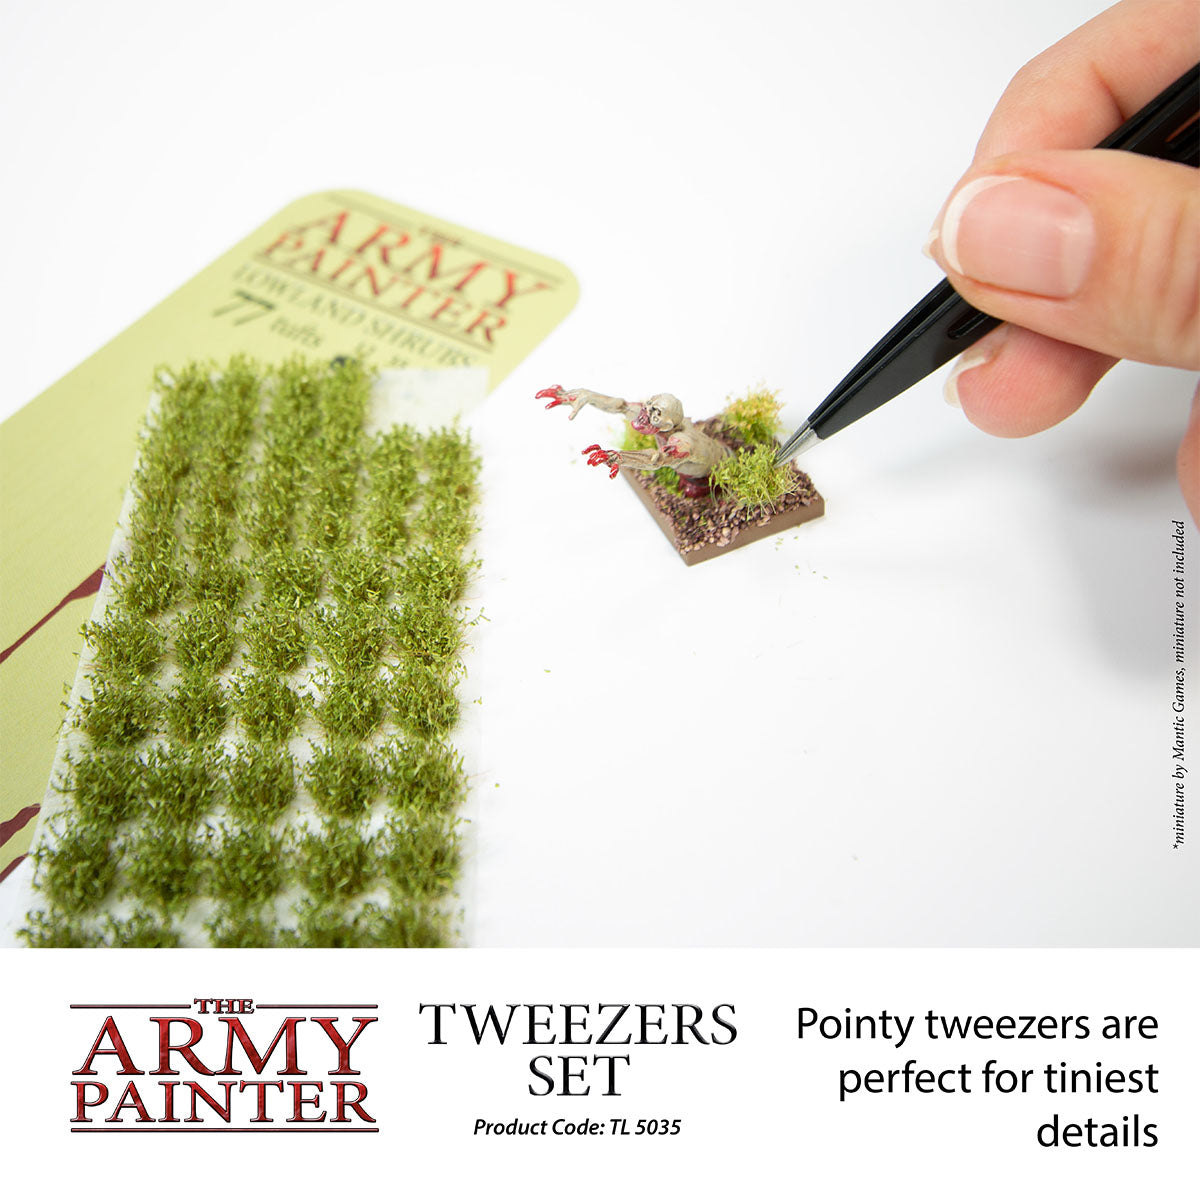 Fine Point Tweezers Craft Tweezers, Tweezers for Crafting, Sticker